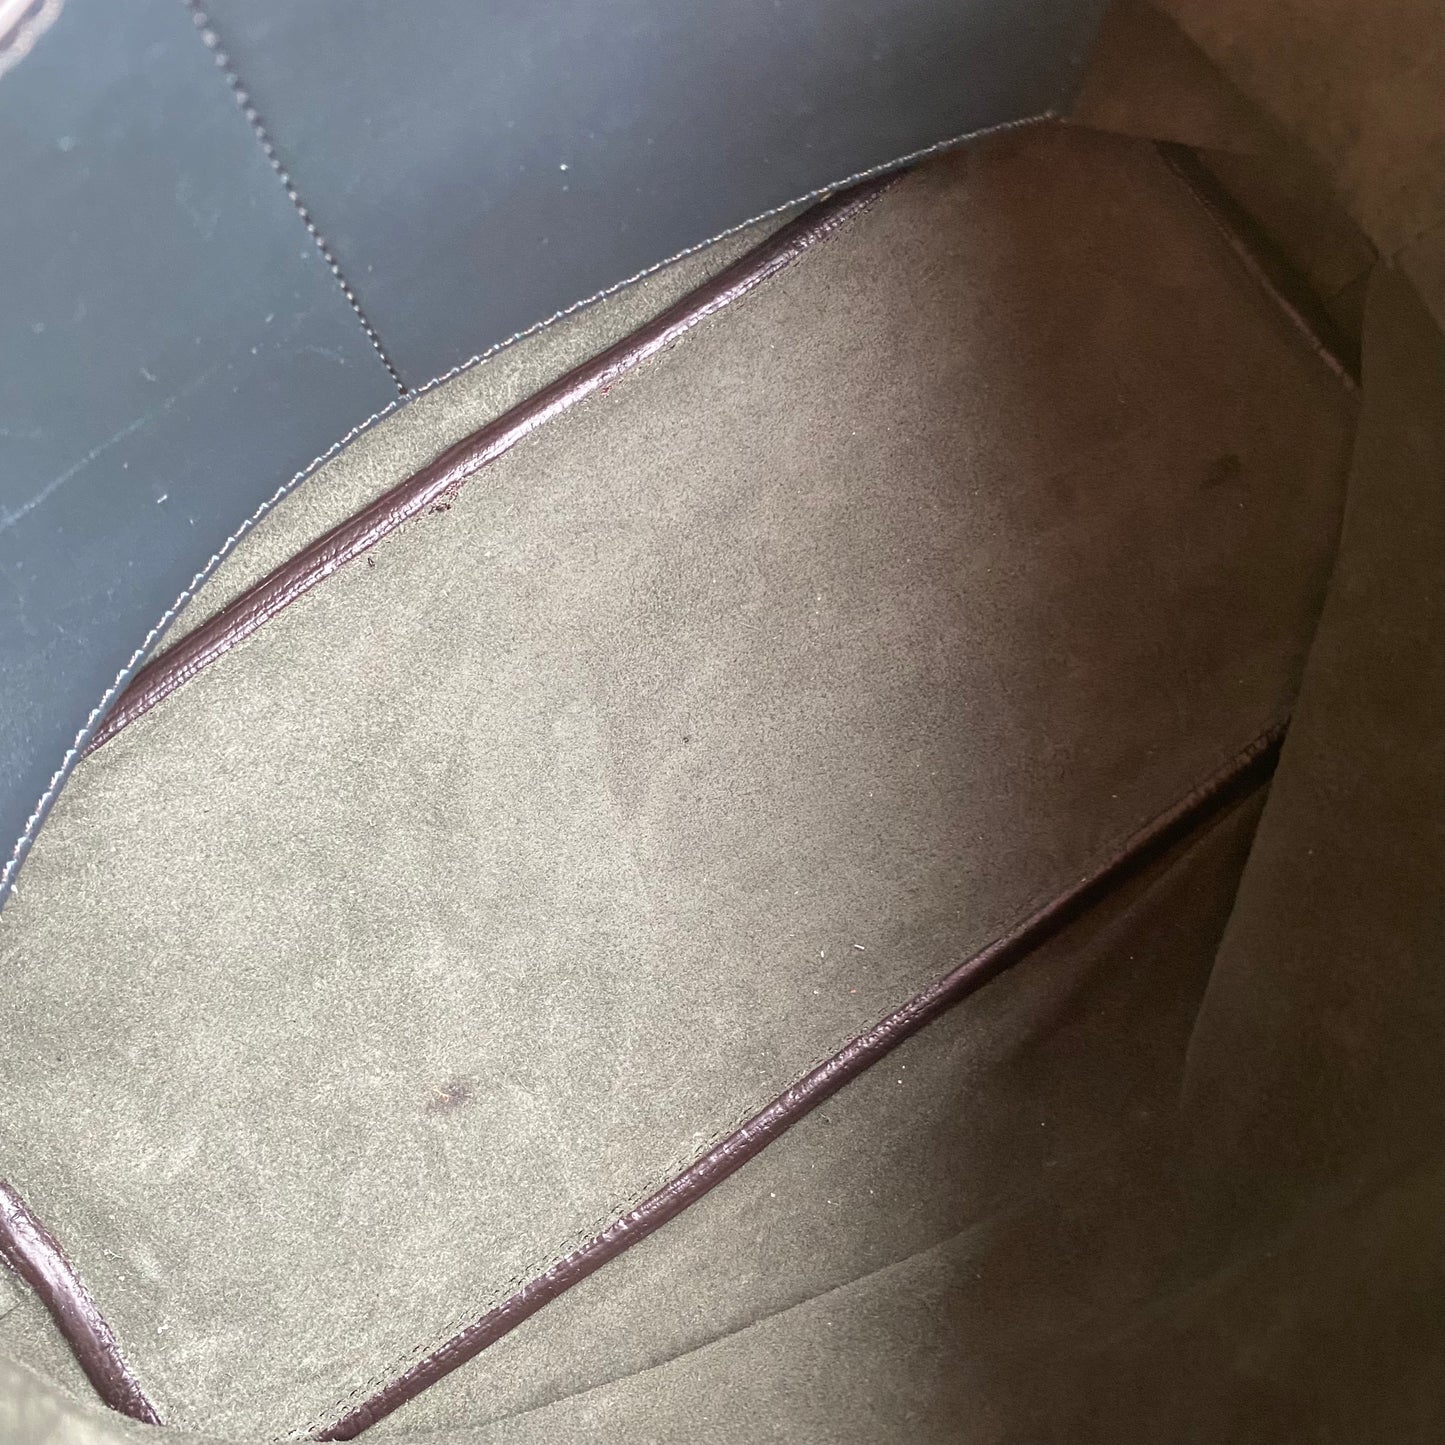 Celine Soft Cube Suede Leather Shoulder Bag